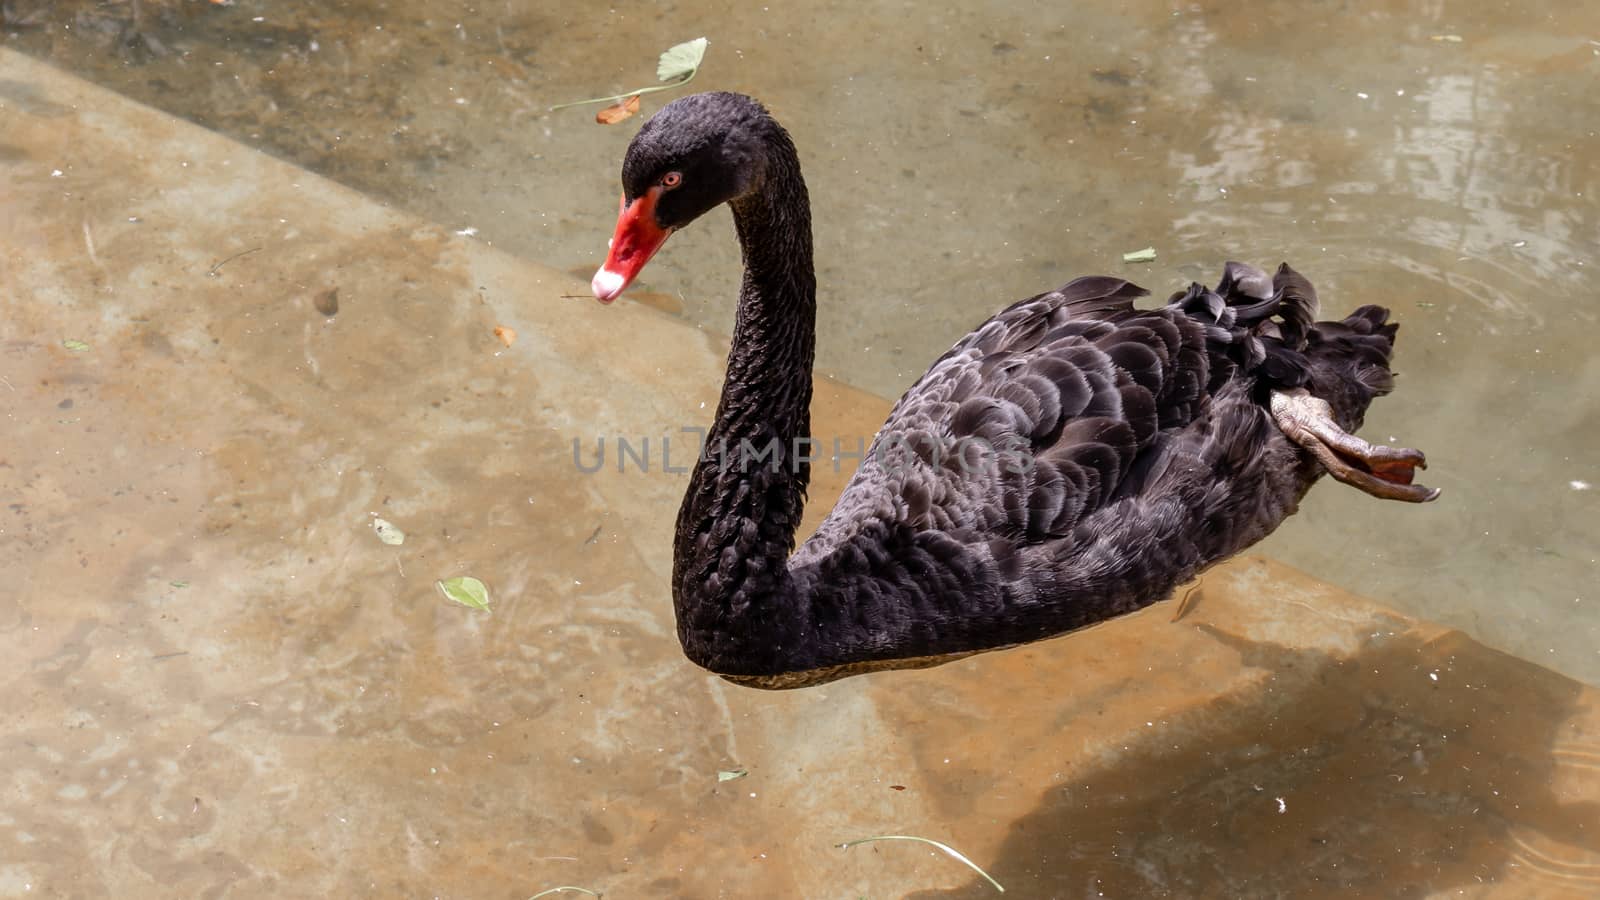 Black swan swimming in pond calmly by nilanka